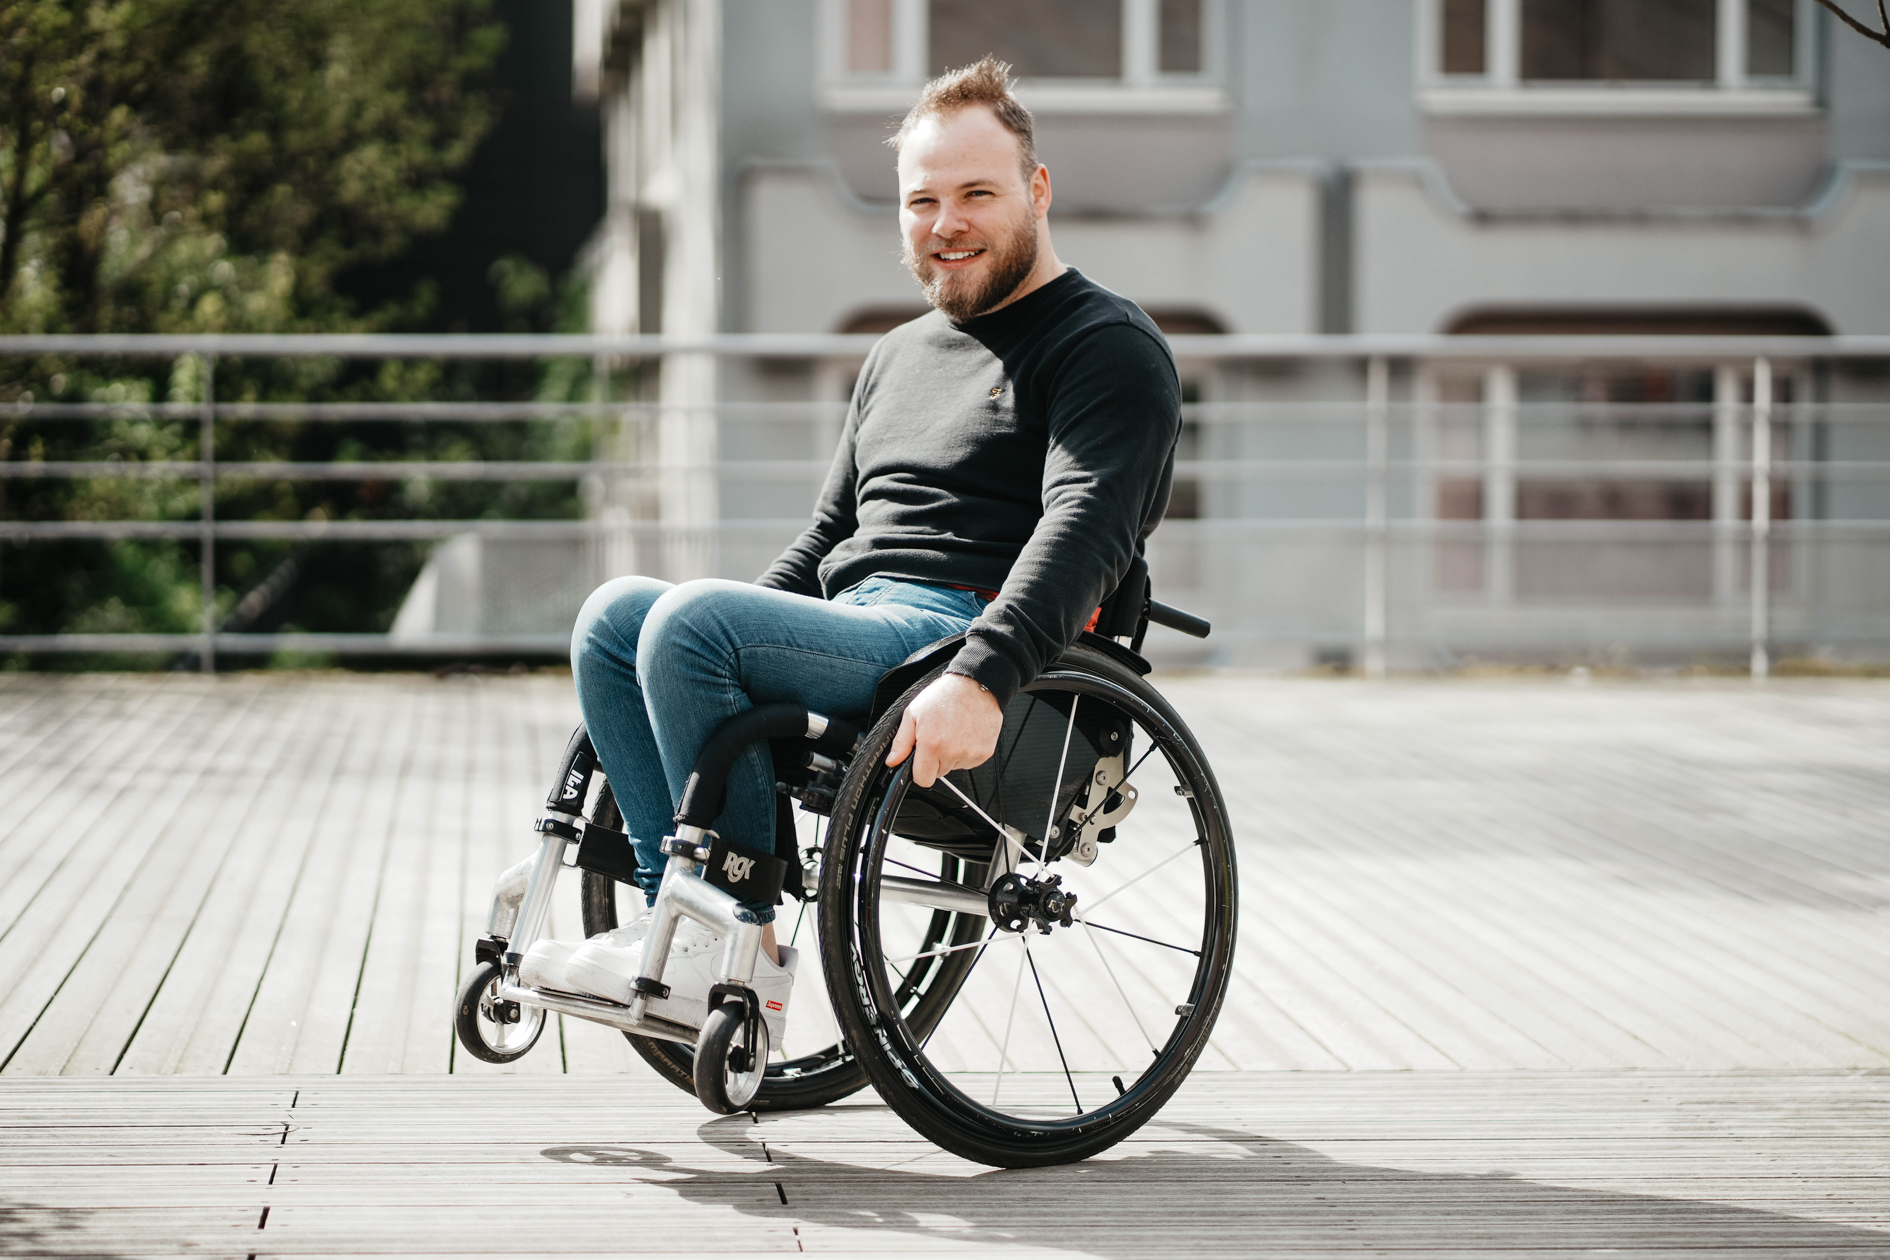 projet photo estime de soi pour des hommes tétraplegique, un jeune homme en fauteuil roulant prend la pose devant l'appareil photo